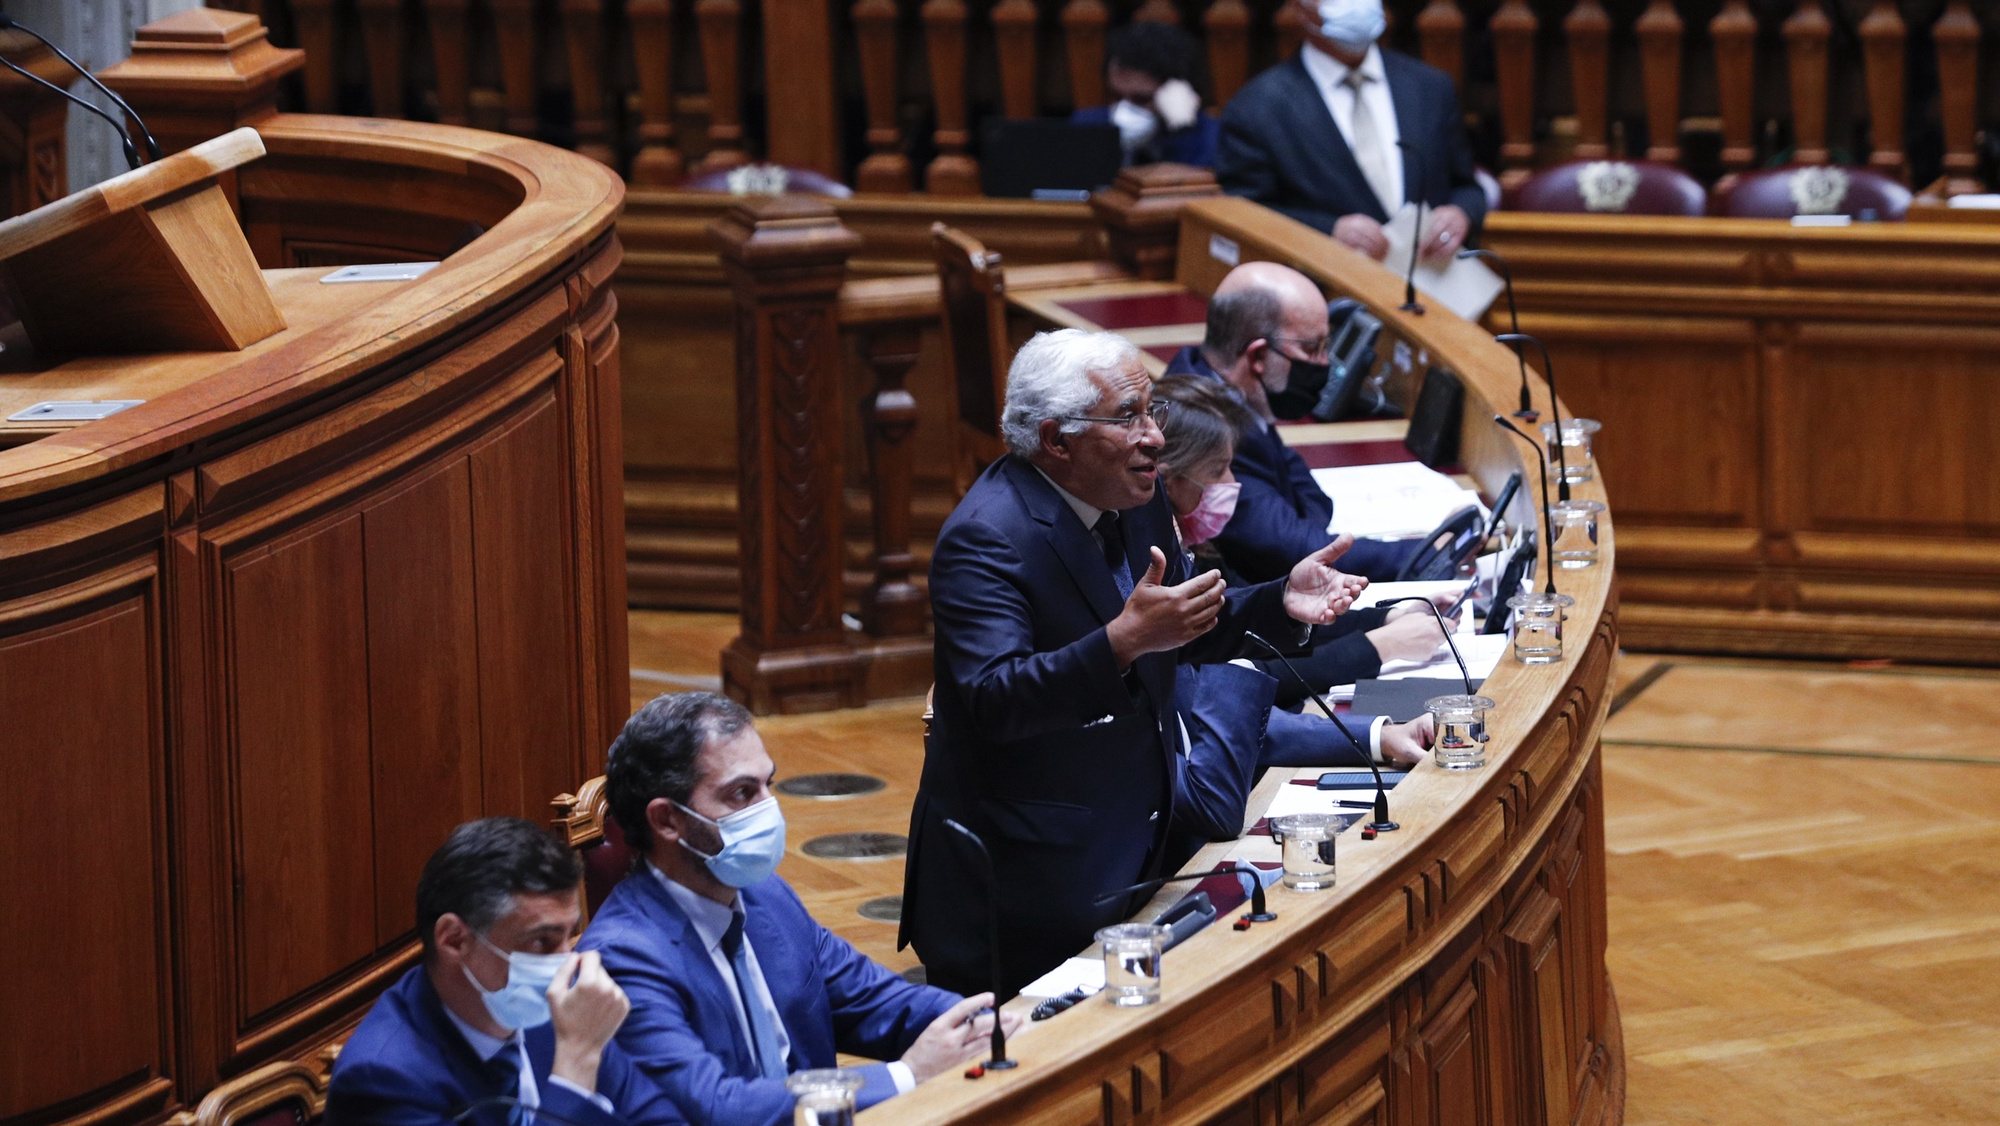 O primeiro-ministro, António Costa, intervém durante o debate sobre política geral, que decorreu na Assembleia da República, em Lisboa, 07 de junho de 2021. ANTÓNIO COTRIM/LUSA